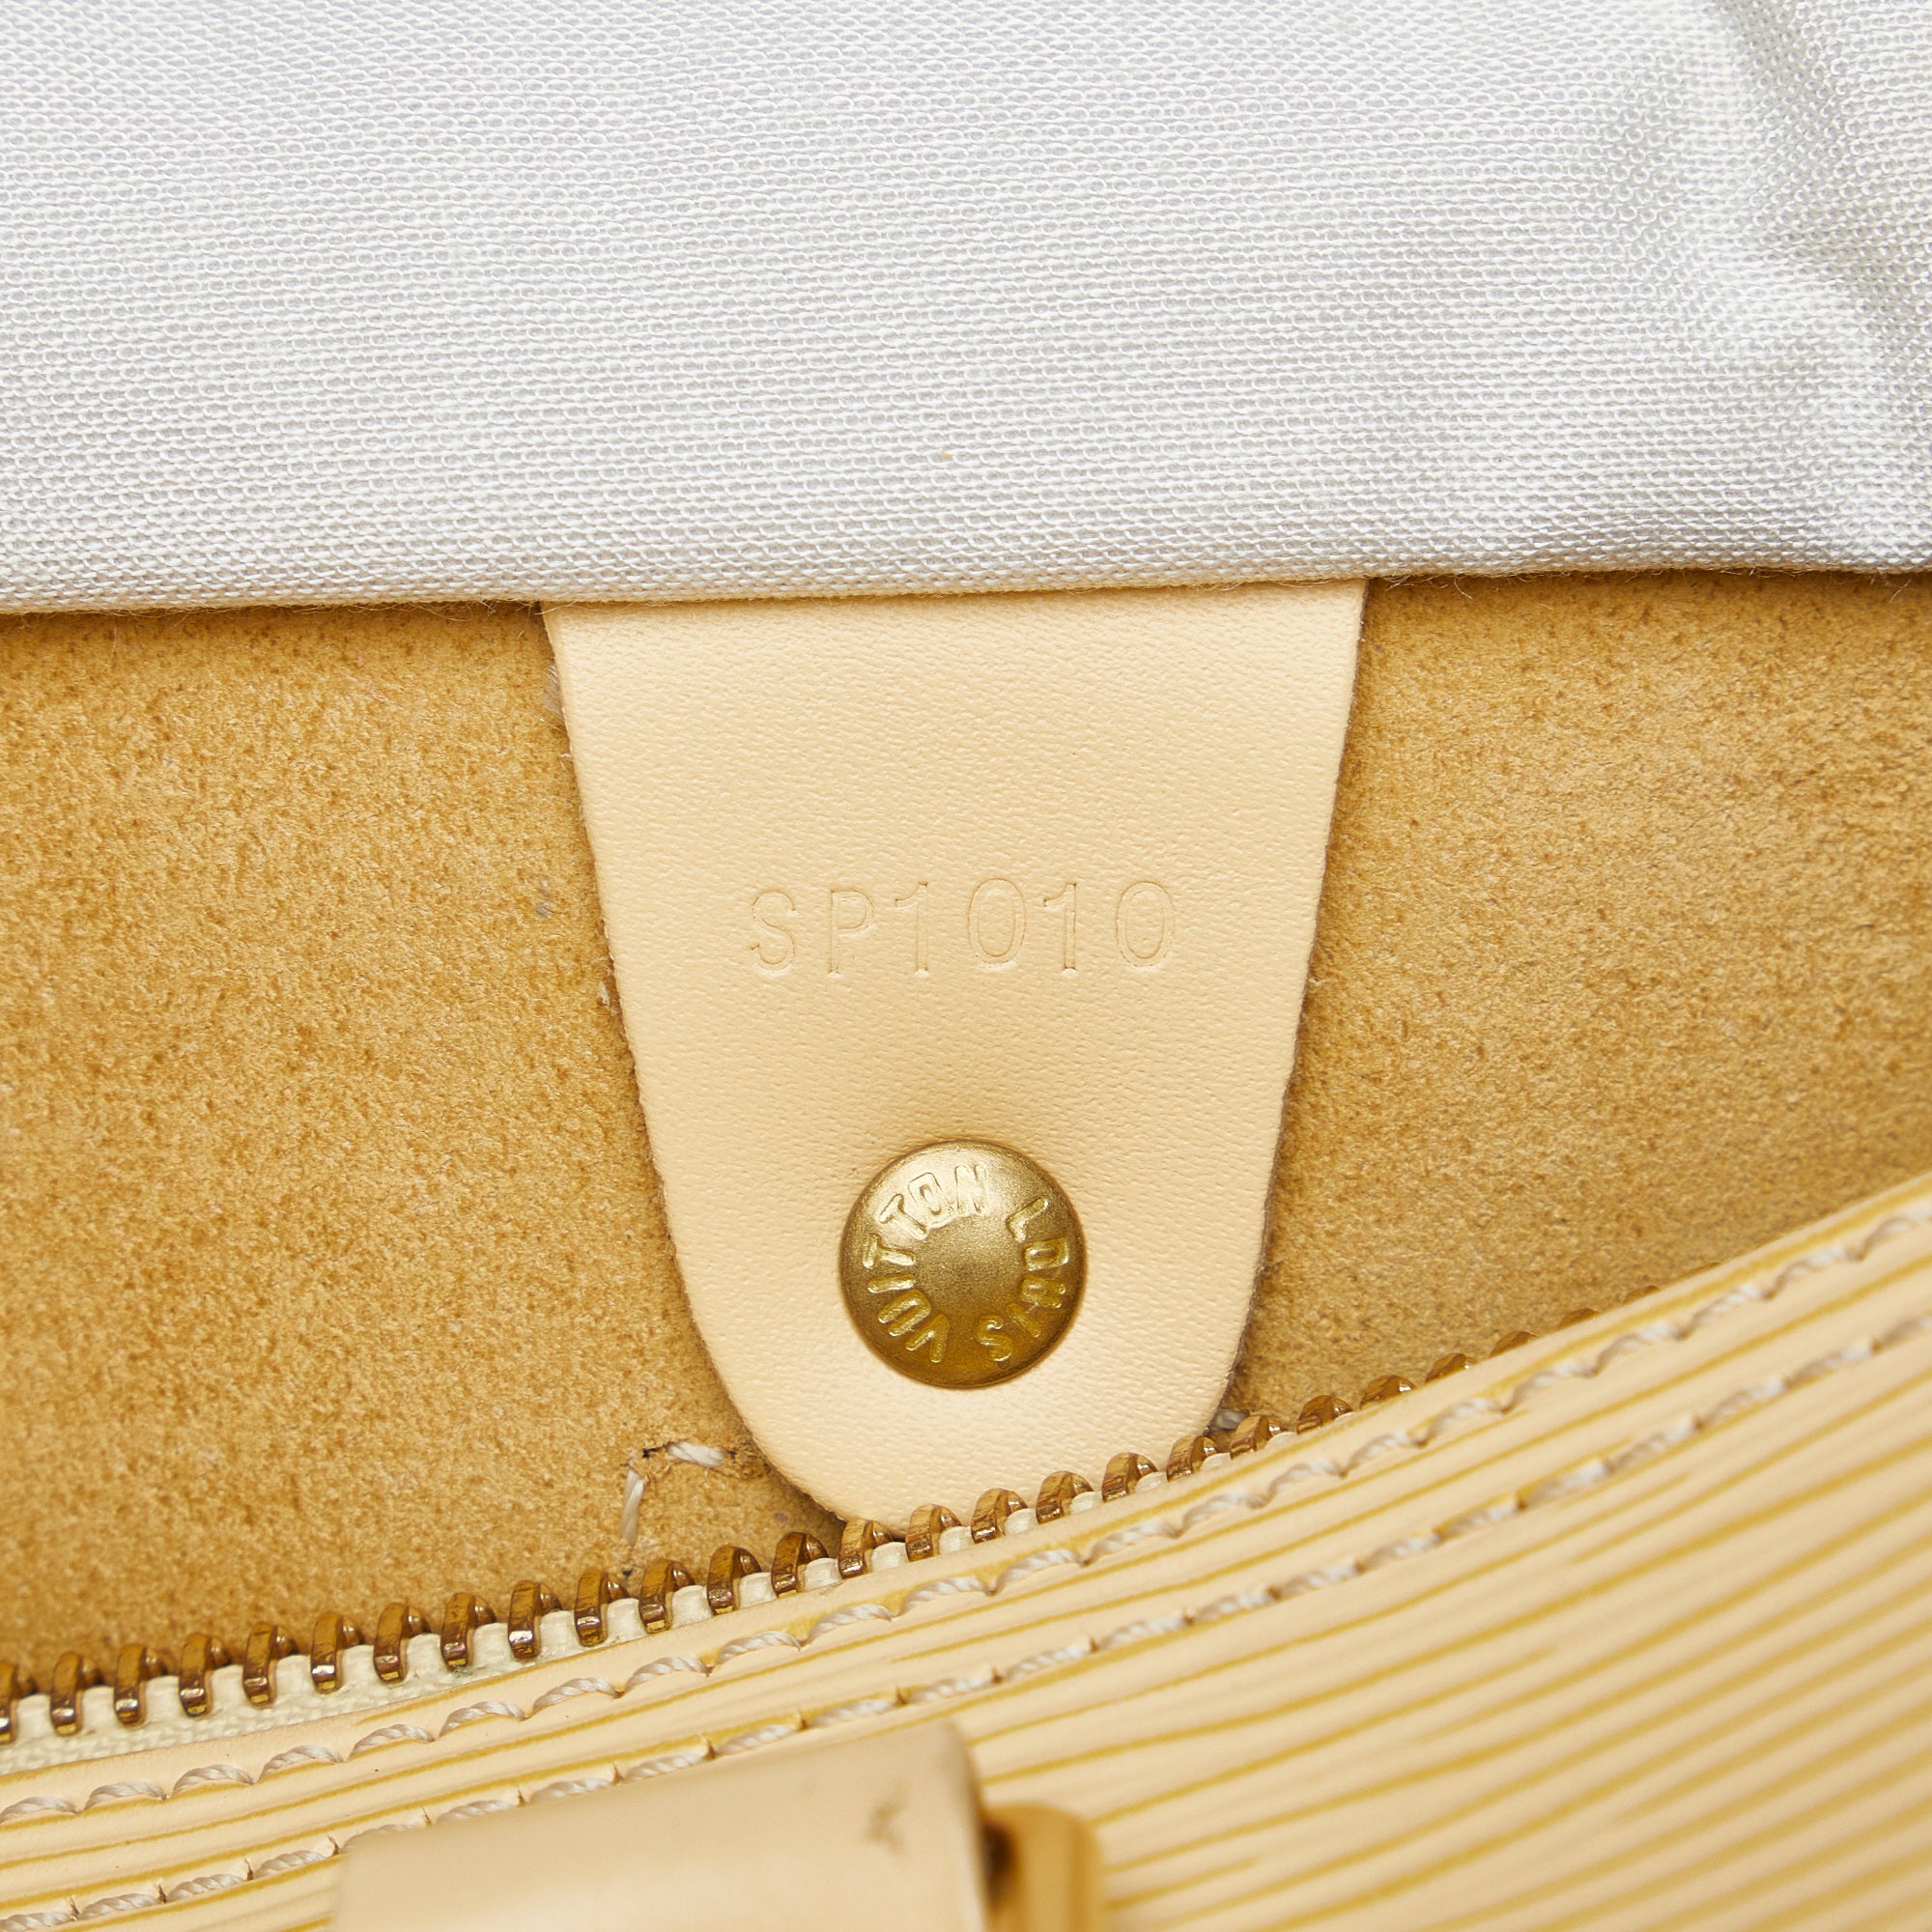 Lot - Louis Vuitton Yellow Epi Leather Speedy 30 Bag